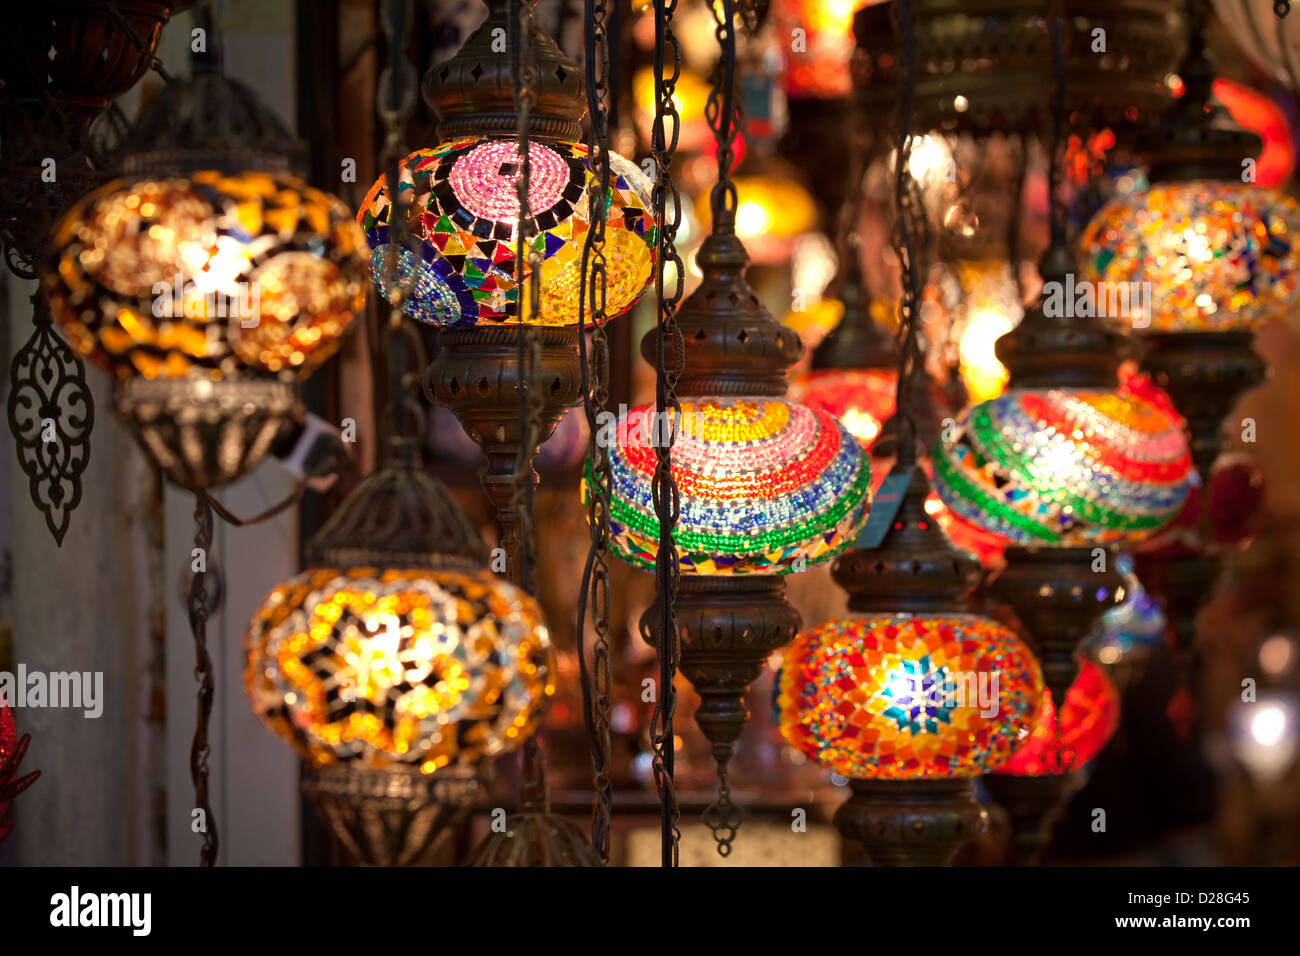 ISTANBUL TÜRKEI - Grand Bazar Kapali Carsi Kapalicarsi, hängenden bunten elektrischen türkische Glas Laternen leuchten in einem Geschäft Stockfoto